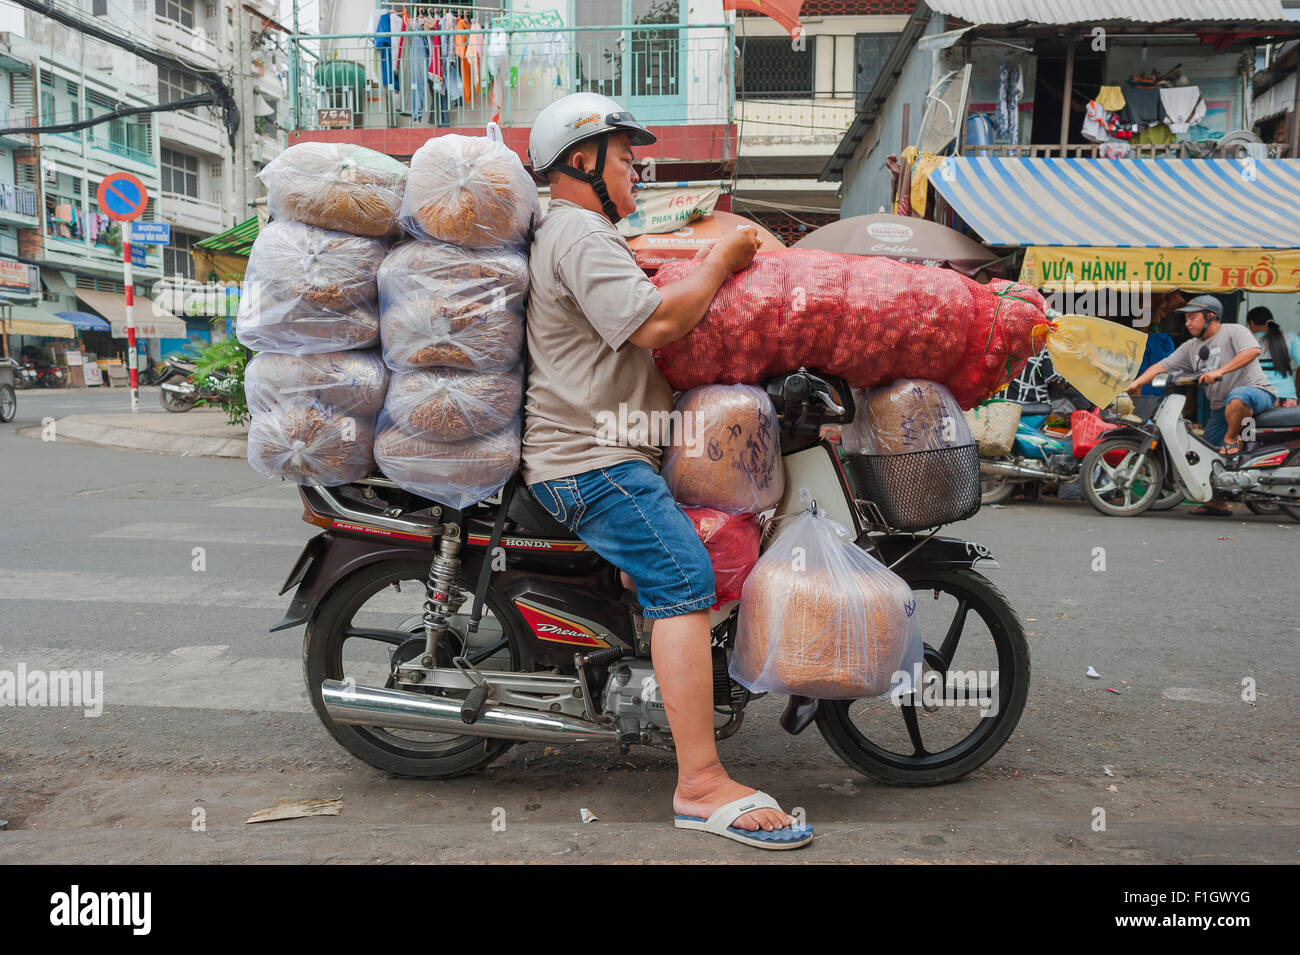 moto-sobrecargados-de-vietnam-una-motocicleta-porter-pausas-para-estabilizar-su-vehiculo-sobrecargado-en-una-calle-en-la-zona-de-binh-tay-cholon-saigon-vietnam-f1gwyg.jpg